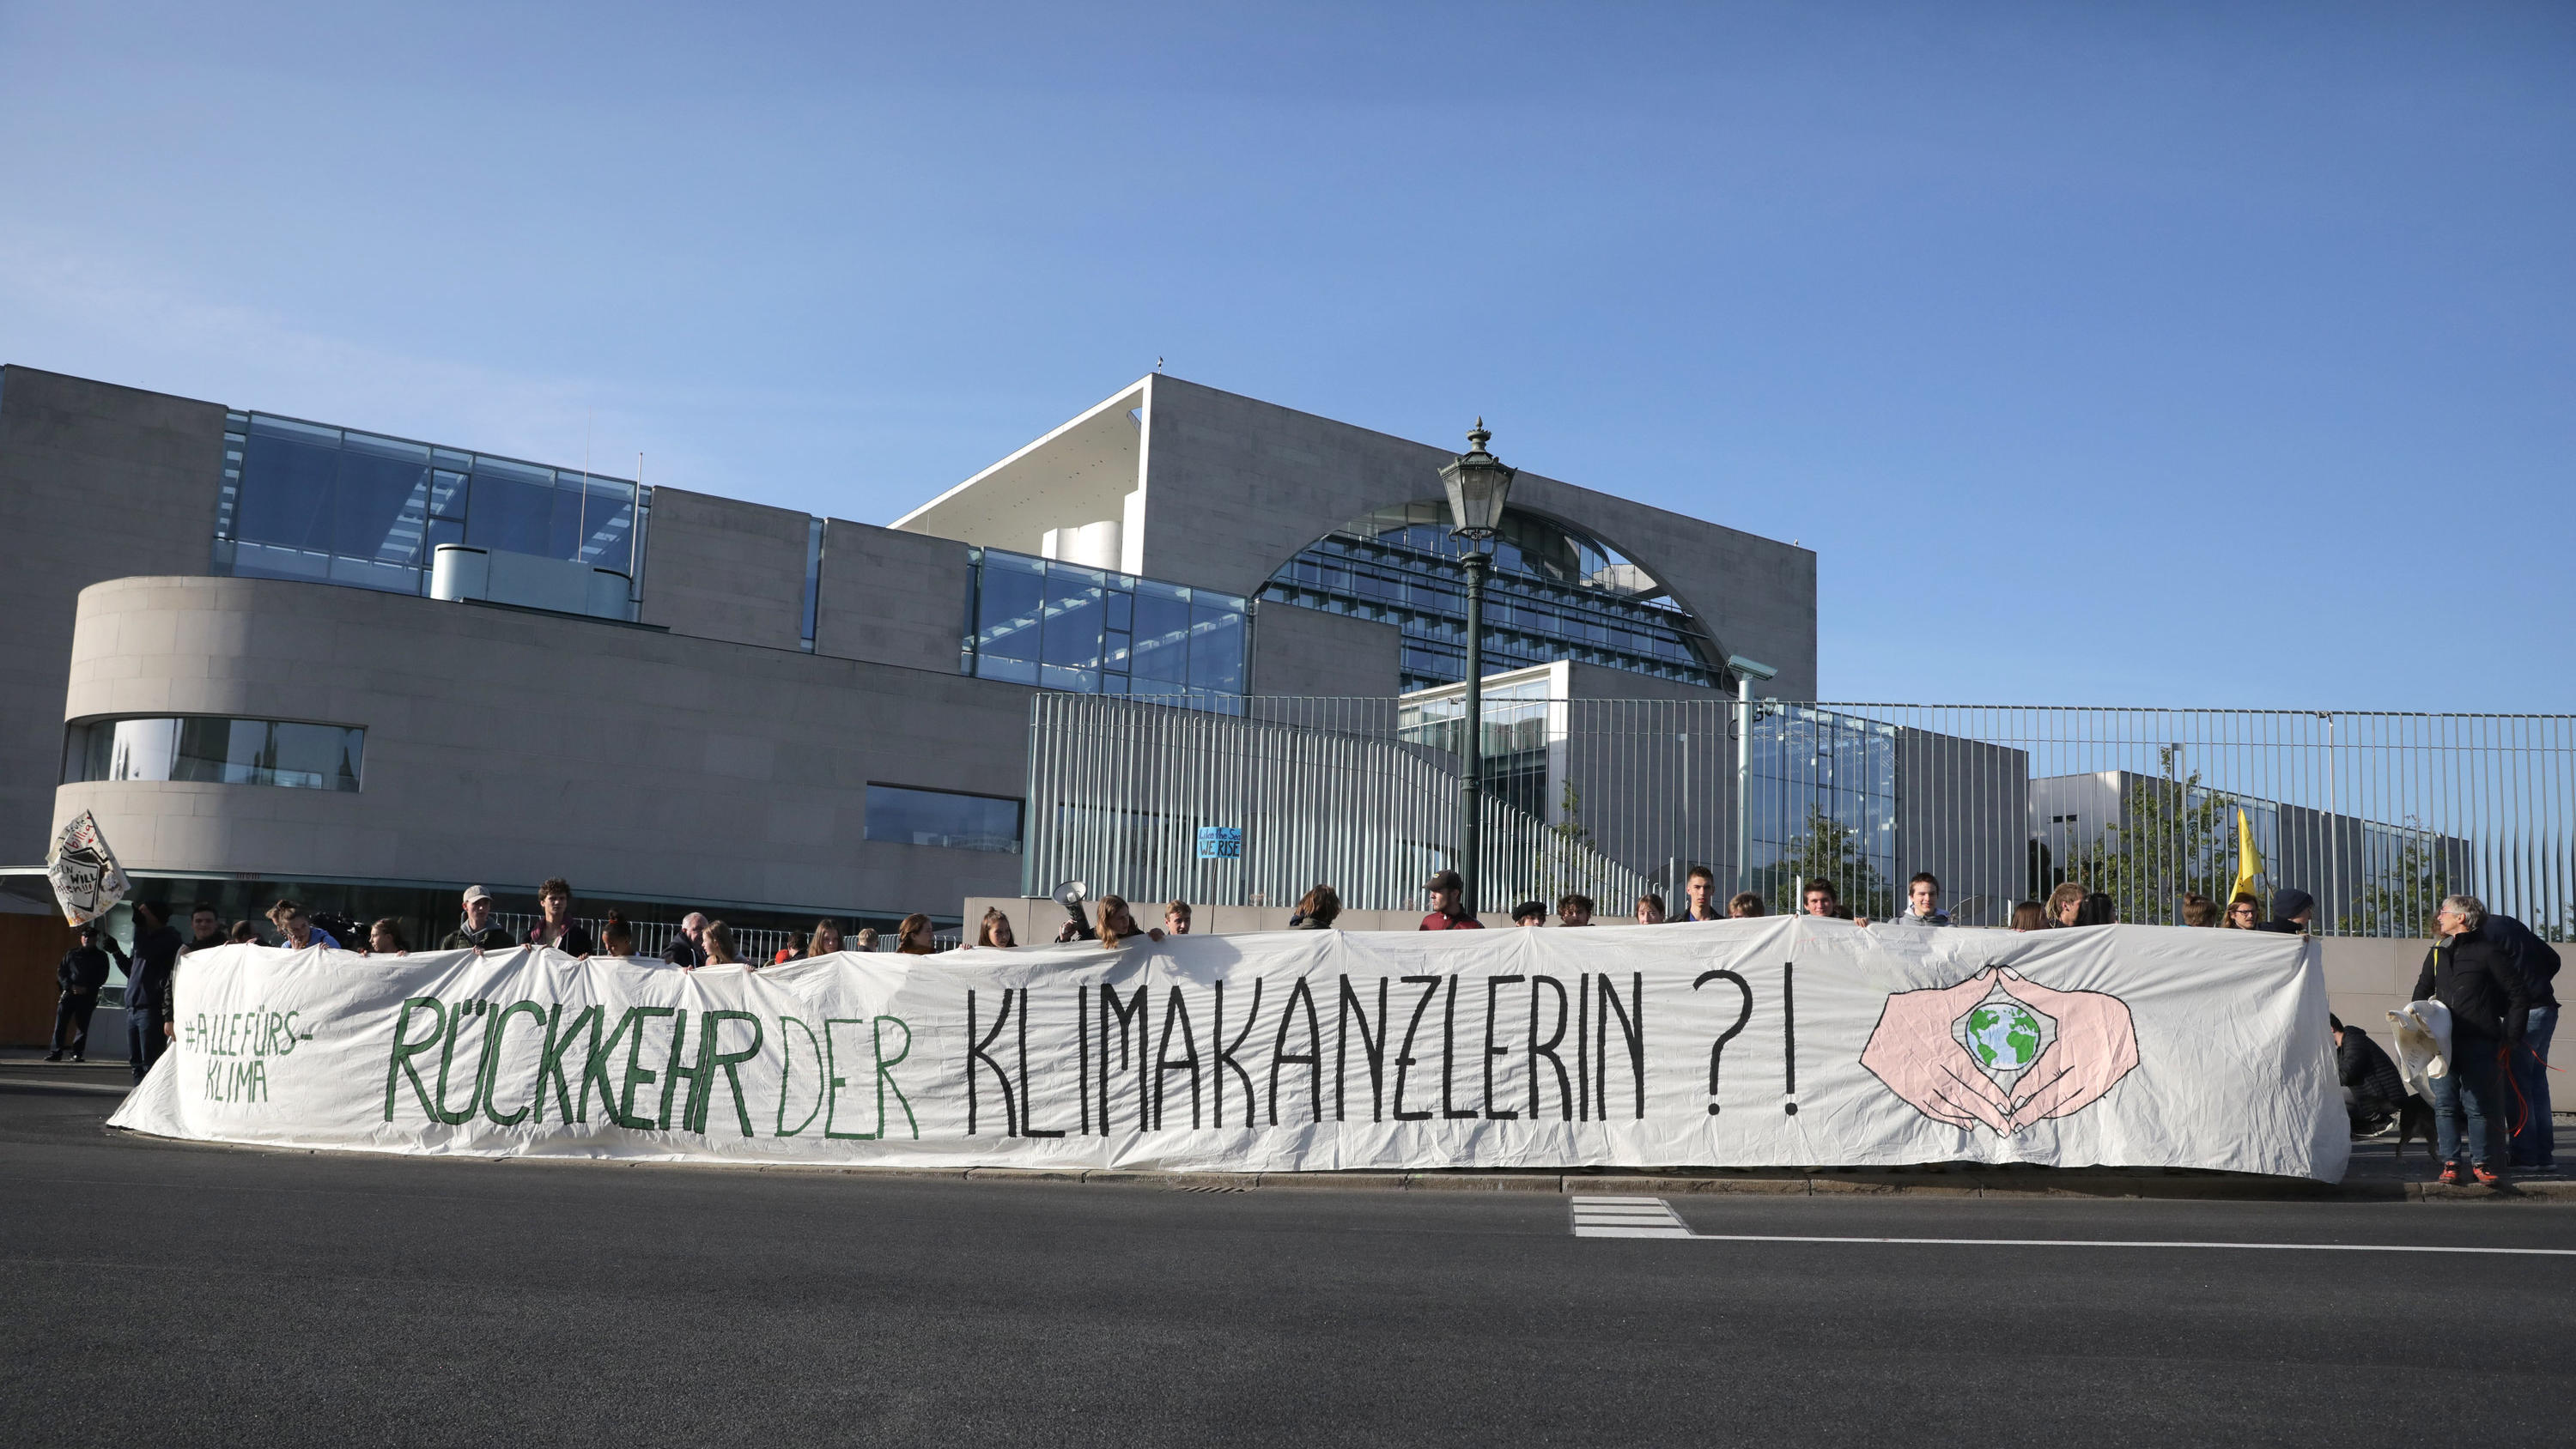 20.09.2019, Berlin: Demonstranten halten ein Banner "Rückkehr der Klimakanzlerin?!" beim Treffen des Koalitionsausschuss im Kanzleramt. Foto: Christoph Soeder/dpa +++ dpa-Bildfunk +++